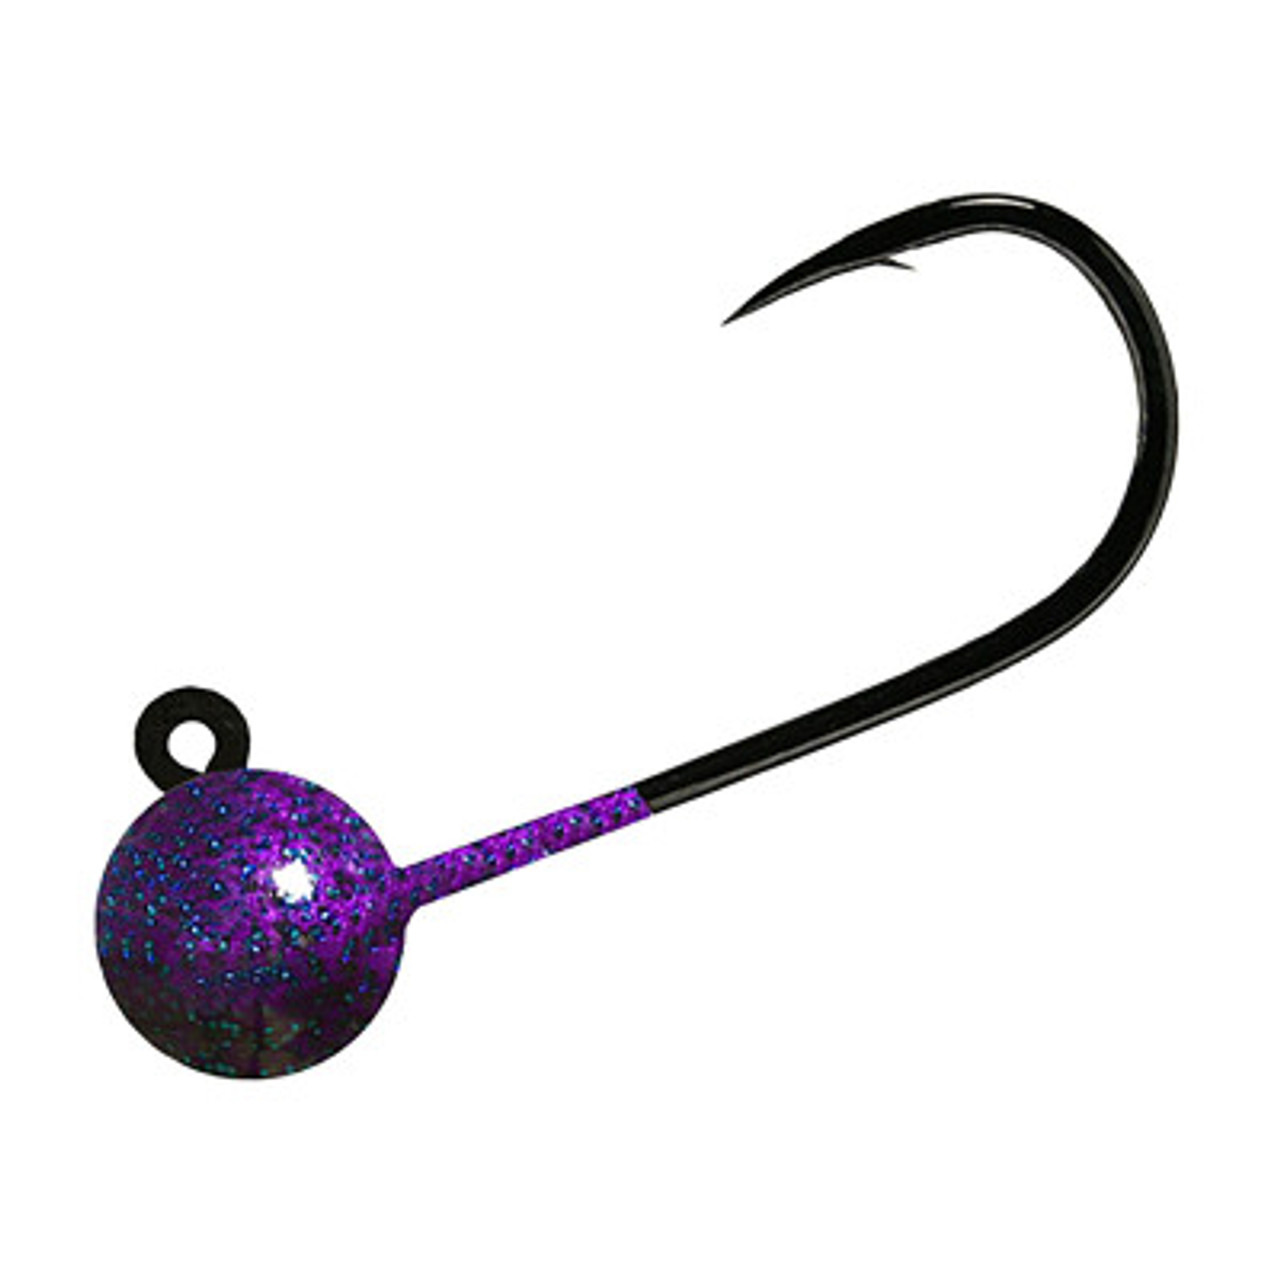 Danielson Steelhead Jig Fishing Equipment, 1/4 oz, Purple/Black, Fishing  Jigs